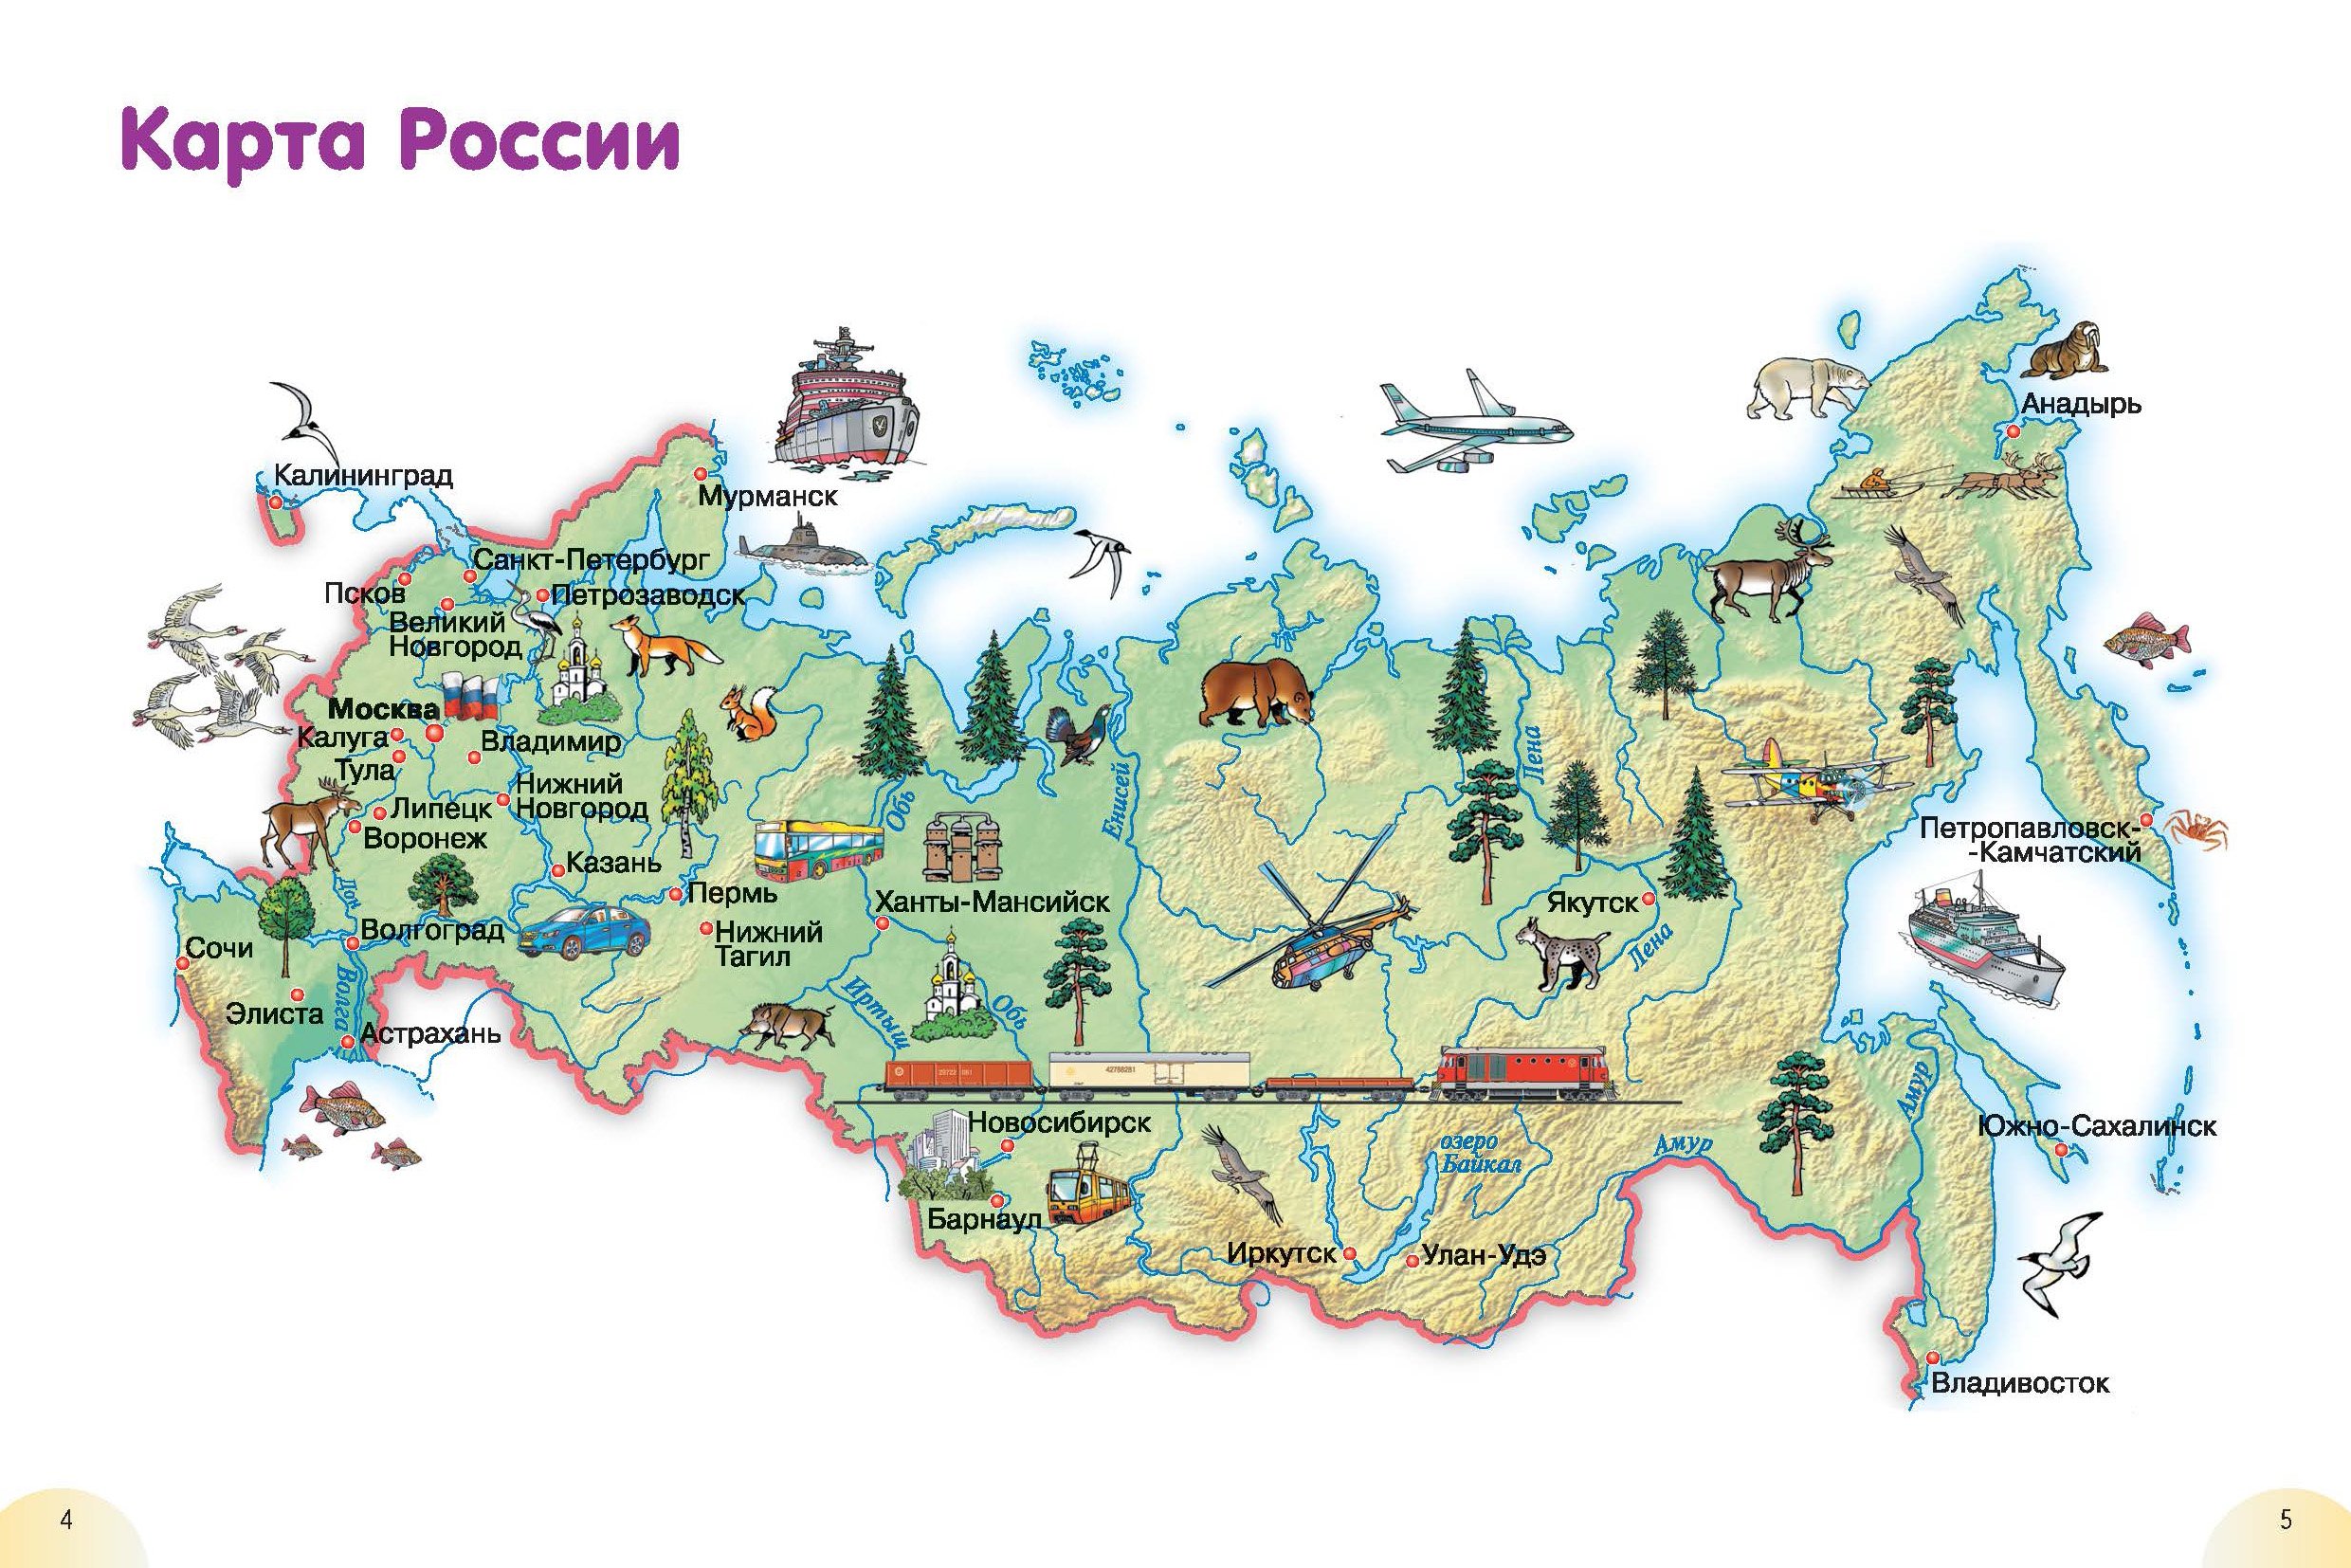 Картыя. Карта России с городами для детей 1 класса. Карта России для детей дошкольного возраста. Карта Росси для детей дшкольного возраста. Картатроссии для детей.